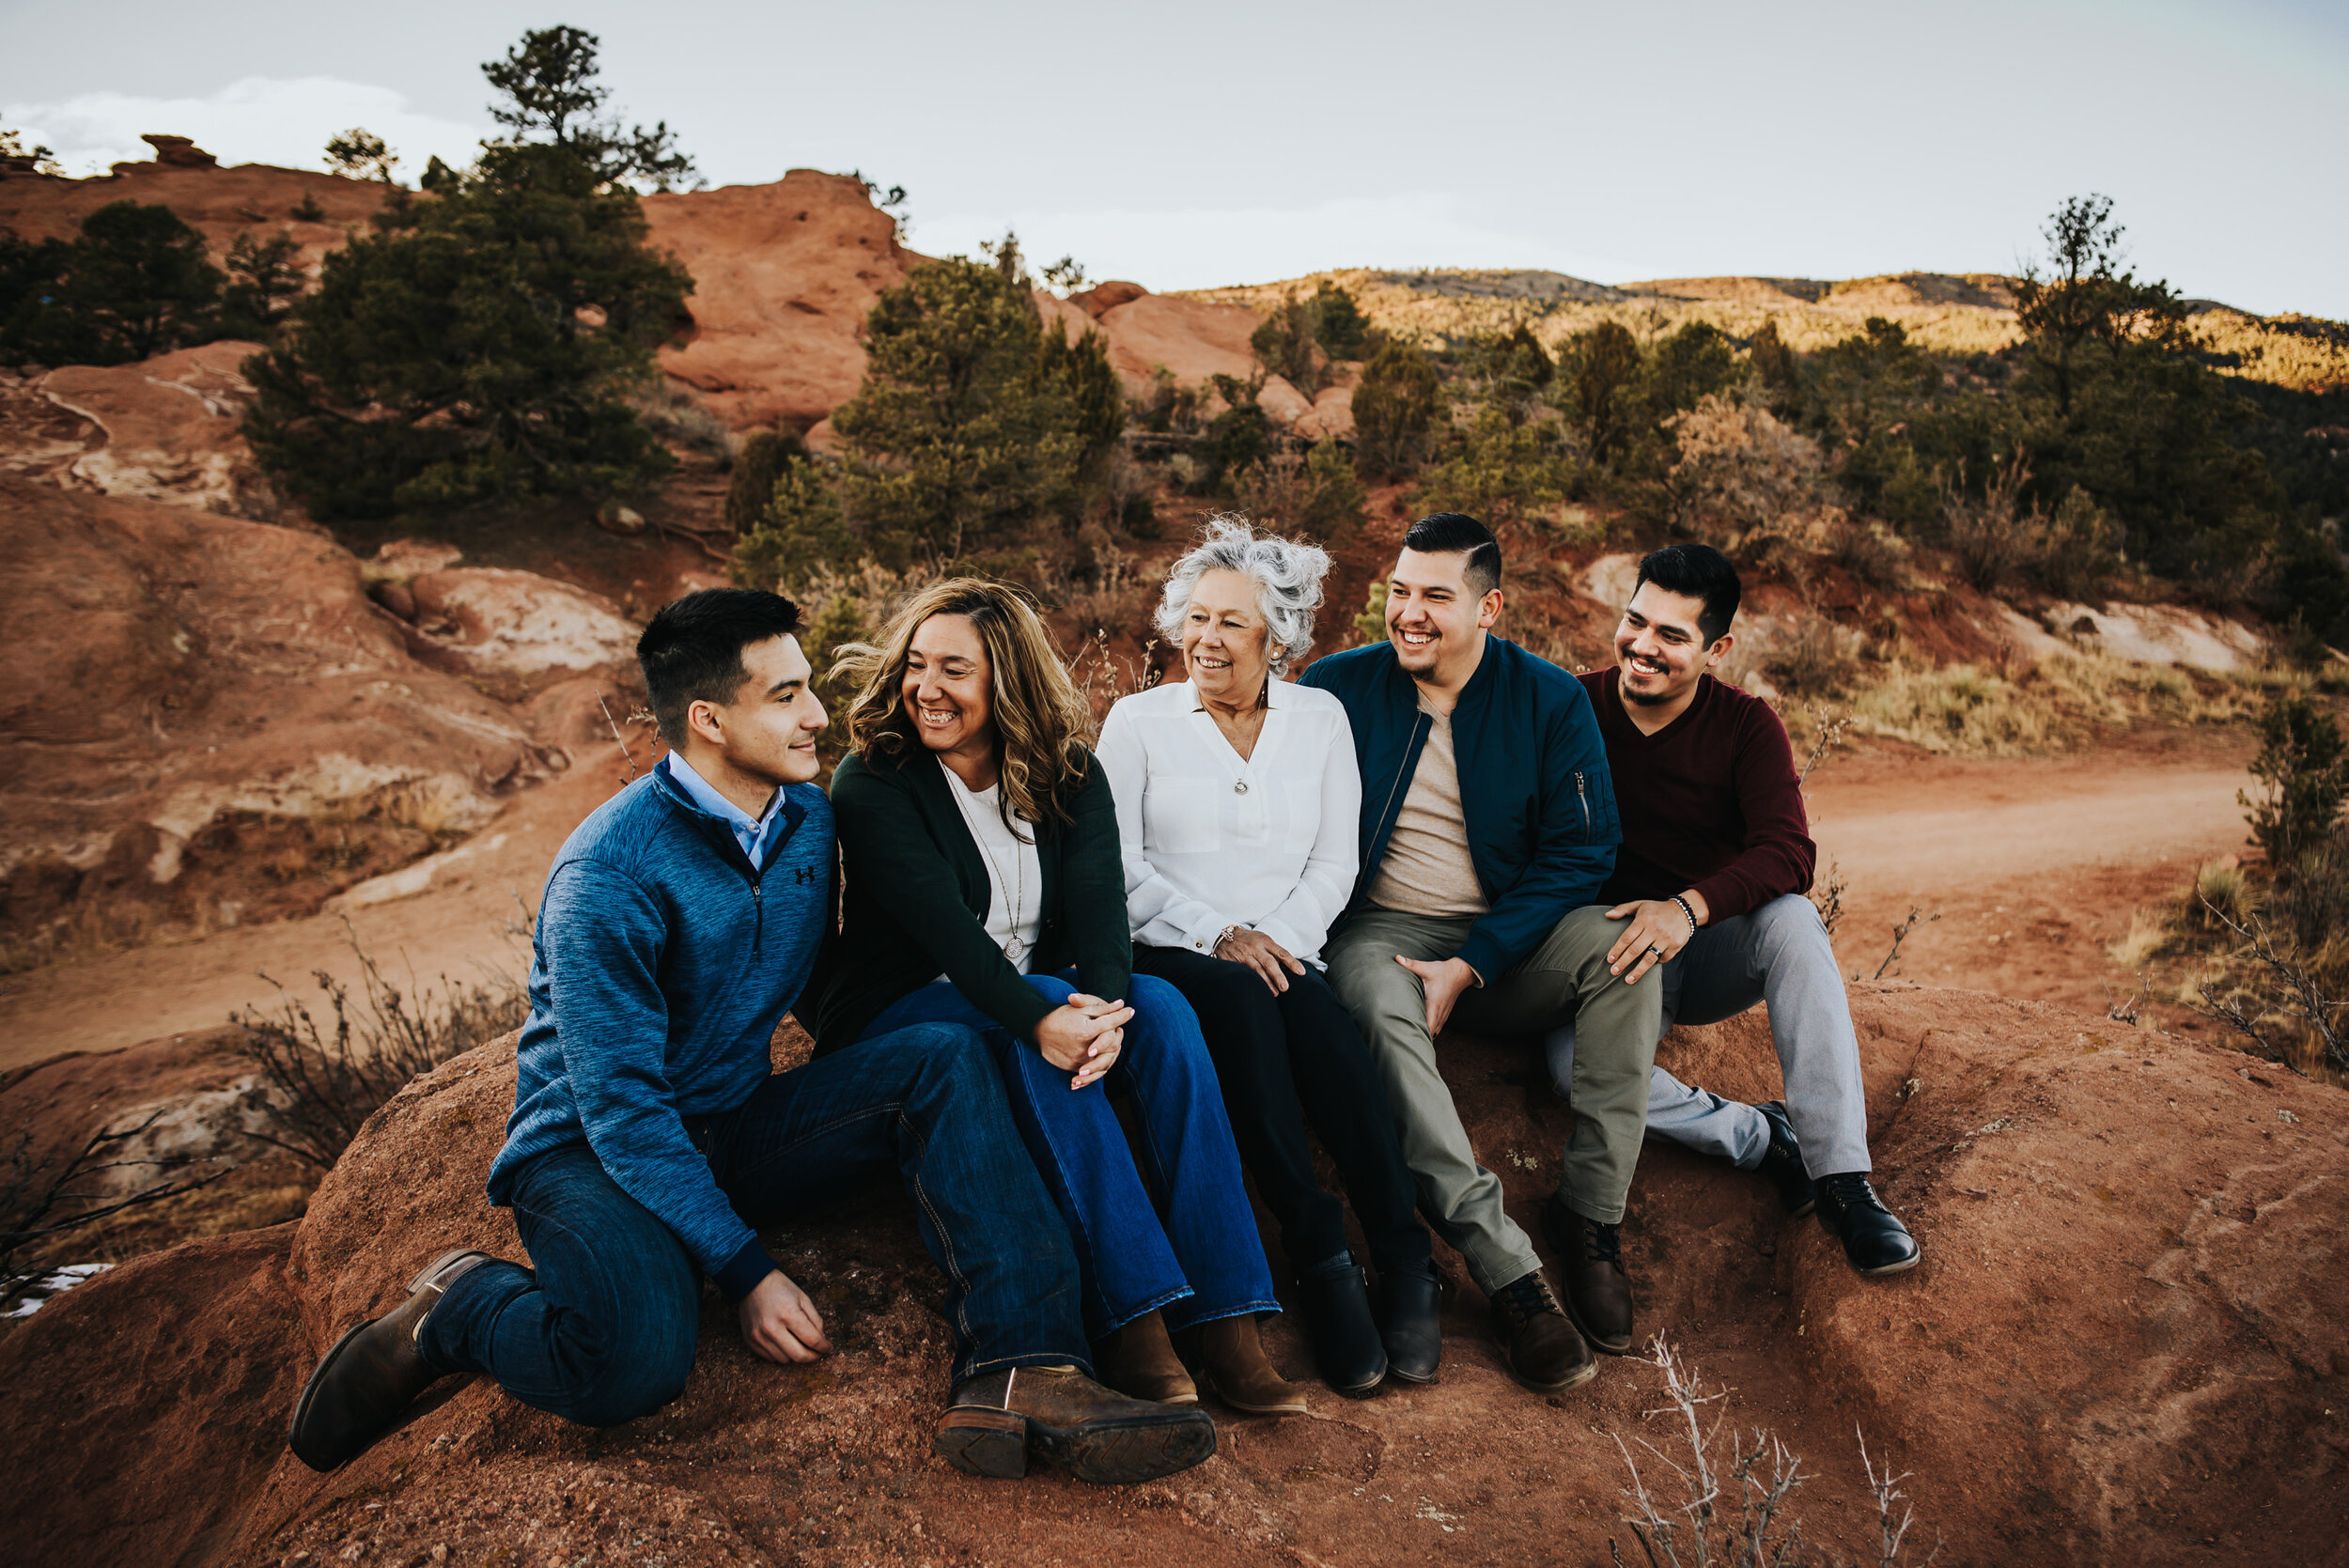 Steven Extended Family Session Colorado Springs Sunset Garden of the Gods Wild Prairie Photography-11-2021.jpg